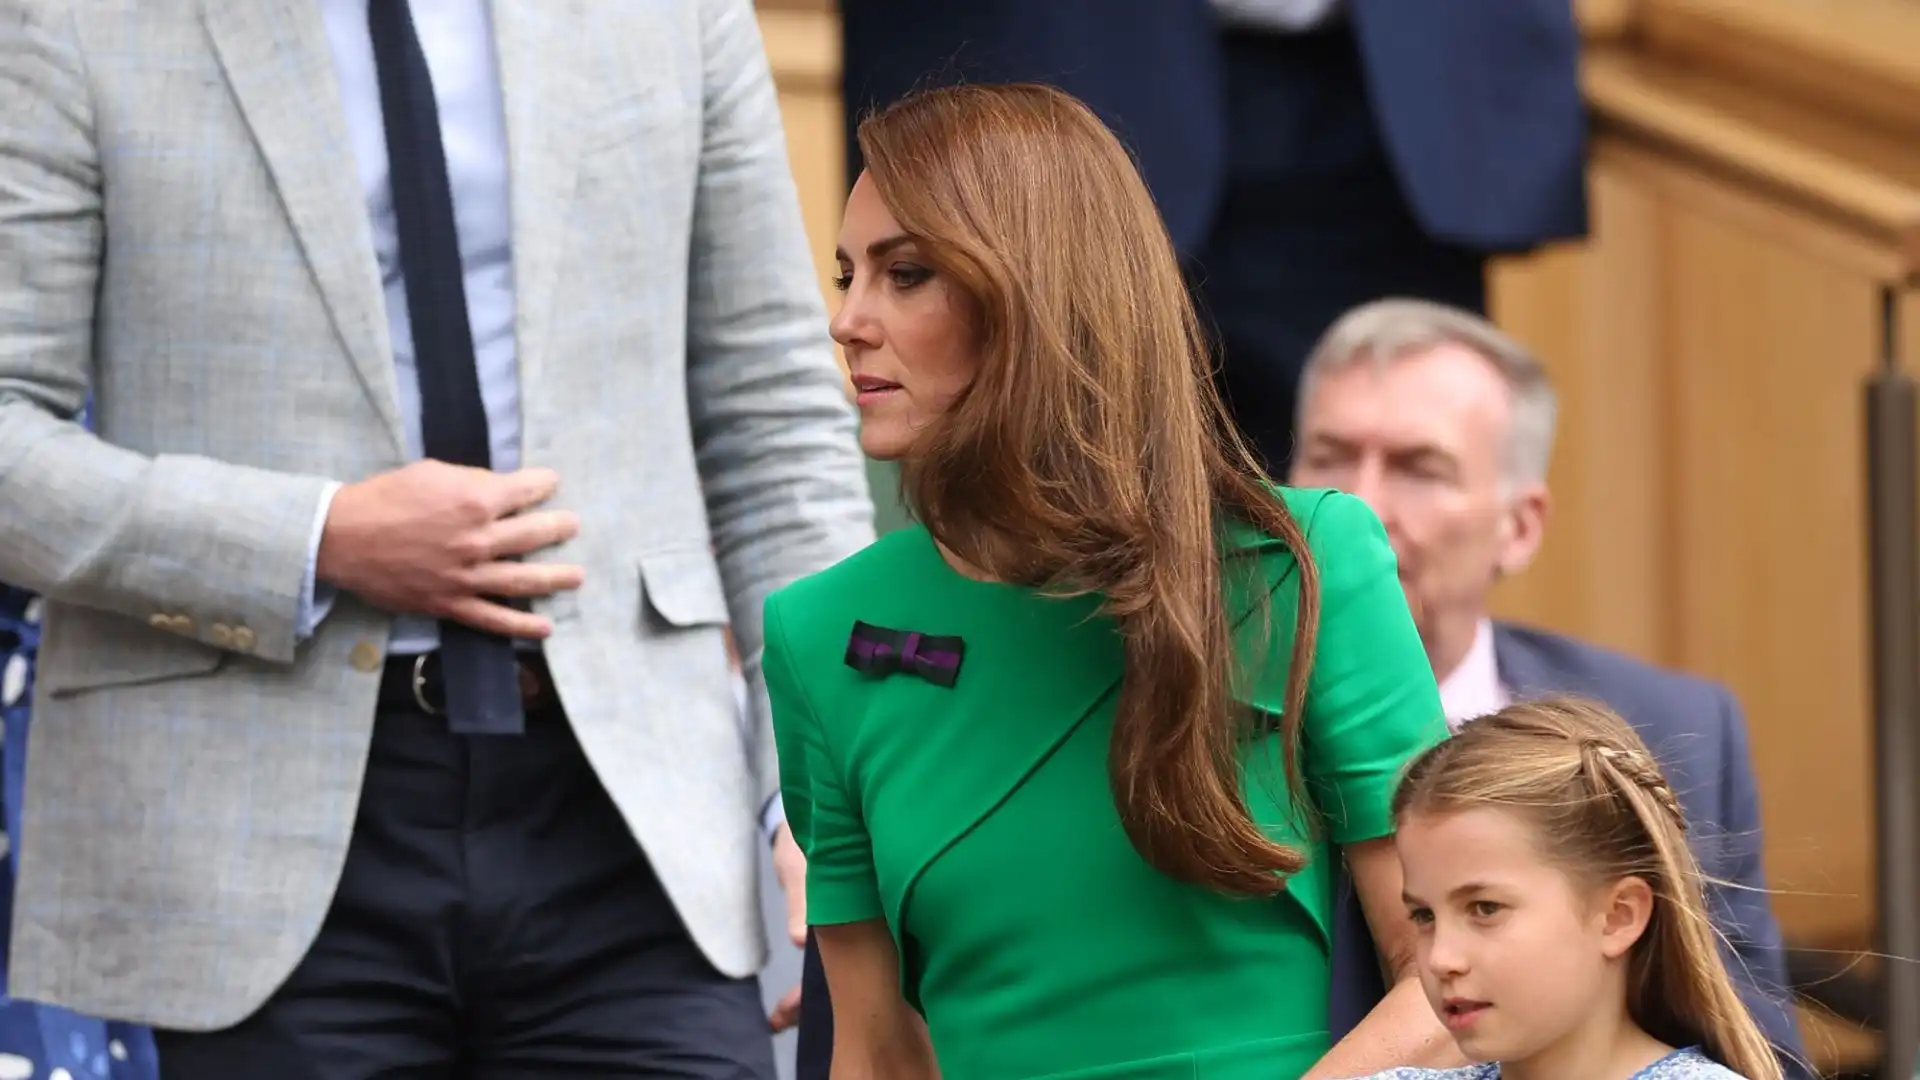 La principessa del Galles è arrivata al leggendario campo Centrale di Wimbledon per assistere alla finale